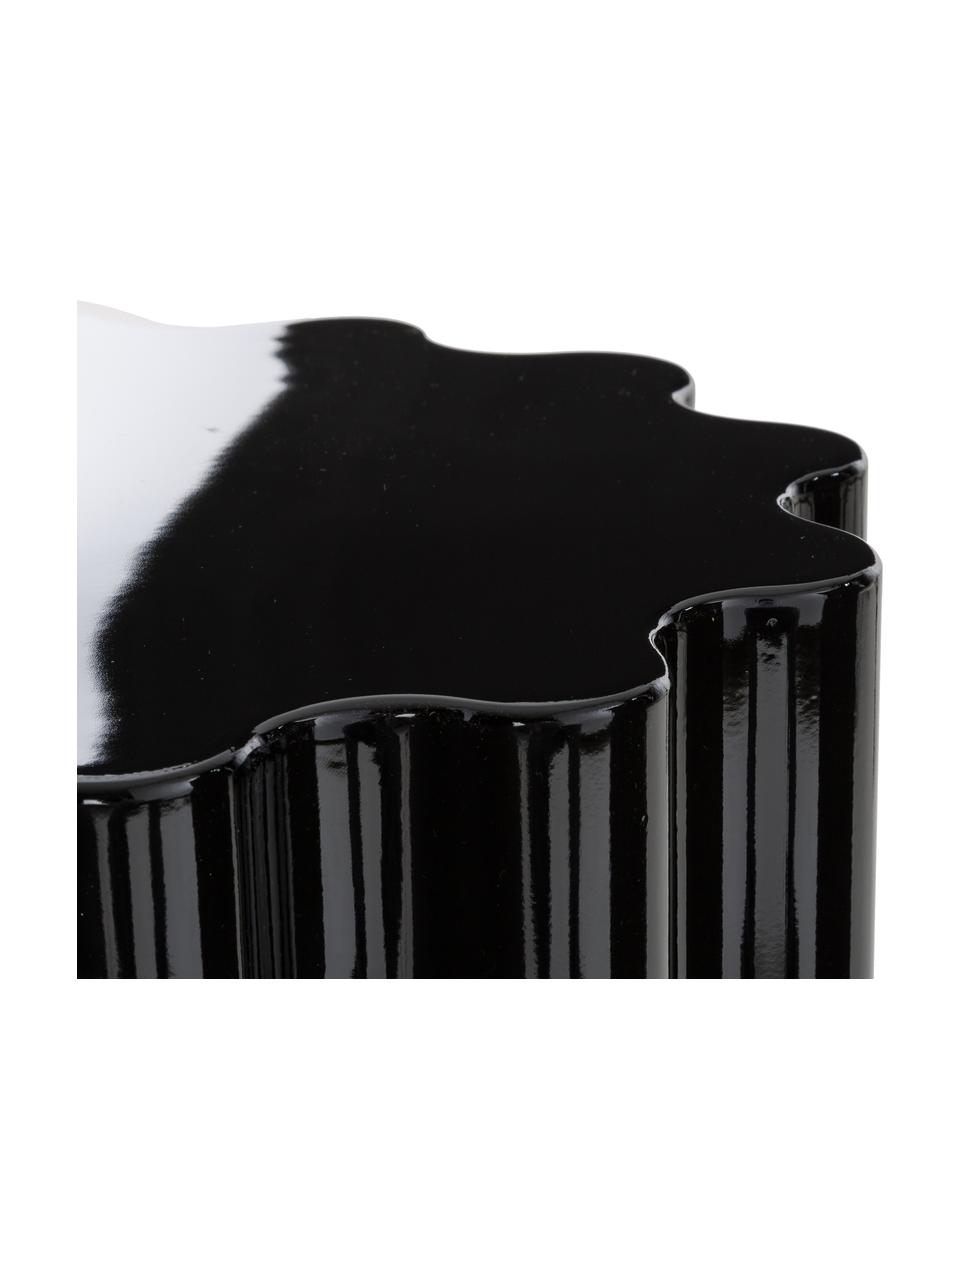 Hocker/ Beistelltisch Colonna, Durchpigmentierter thermoplastischer Kunststoff, Schwarz, Ø 35 x H 46 cm